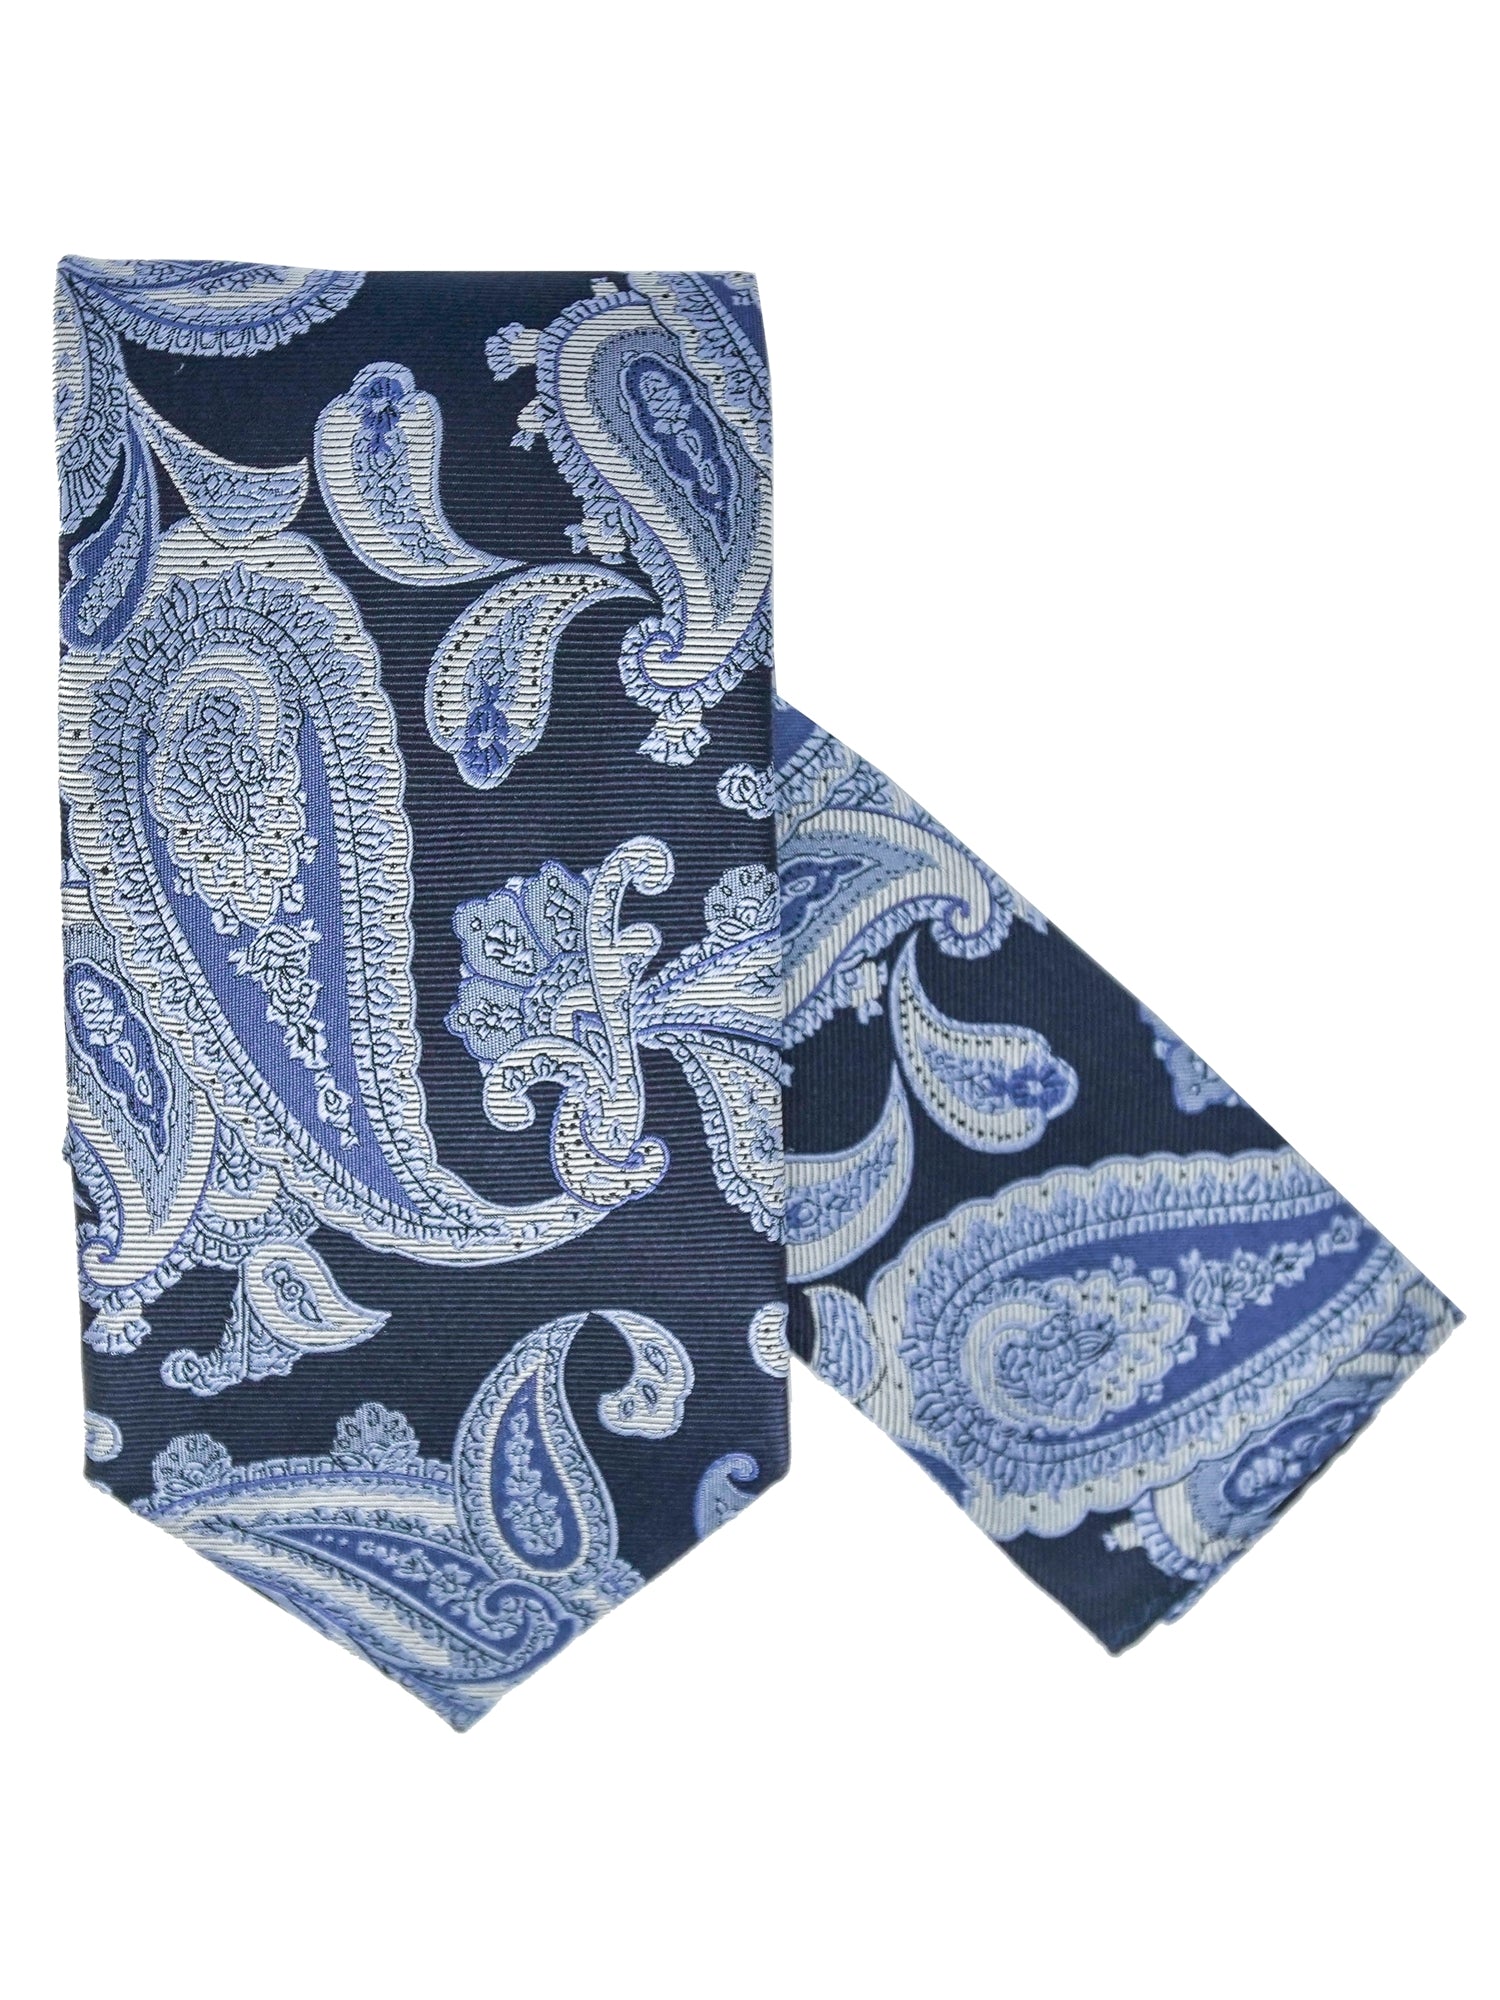 Men's Silk Woven Wedding Neck Tie With Handkerchief Neck Tie TheDapperTie Blue And Navy Paisley Regular 